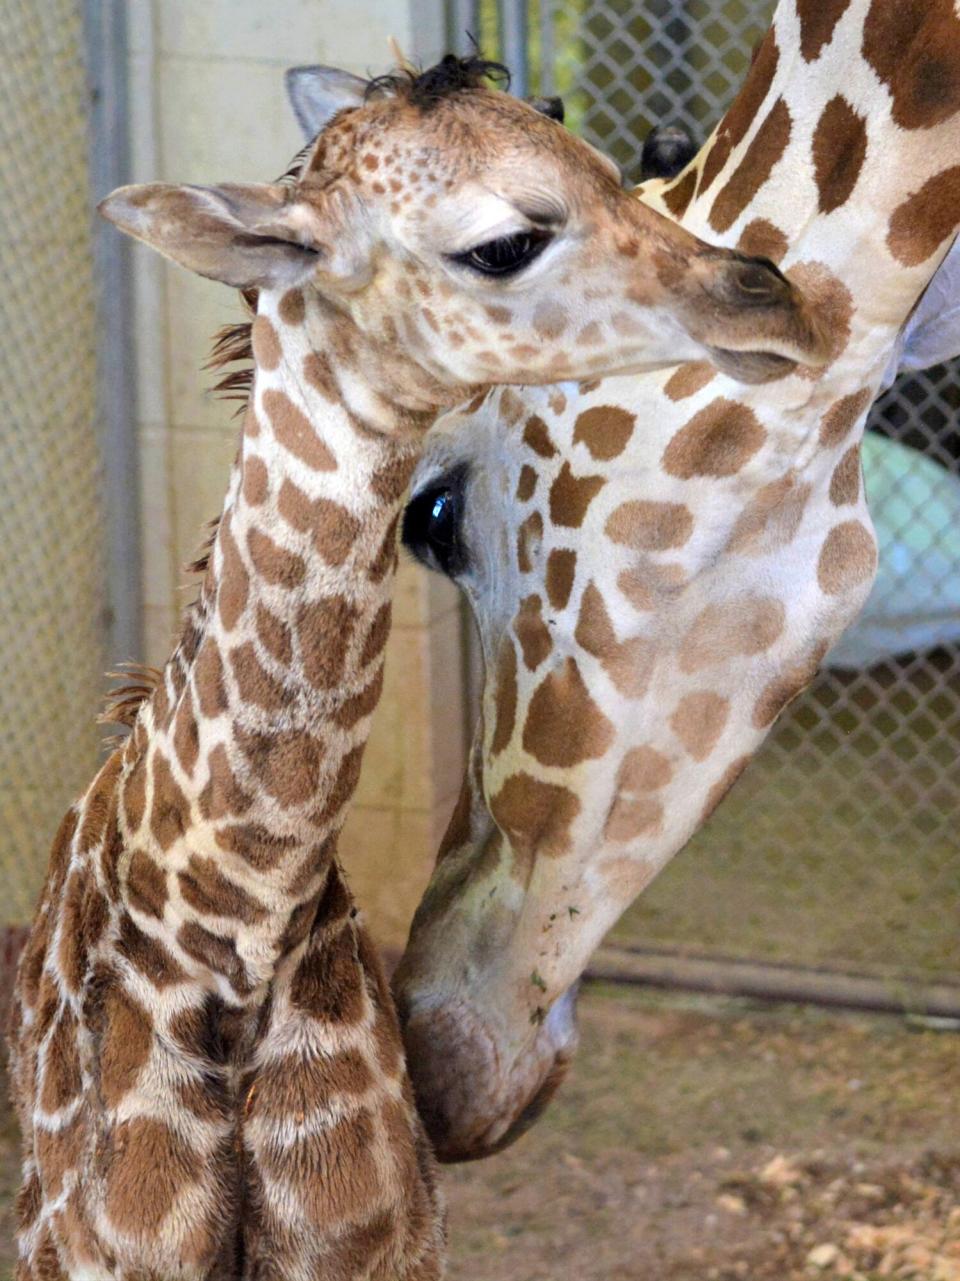 Giraffe Calf born at Cheyenne Mountain Zoo